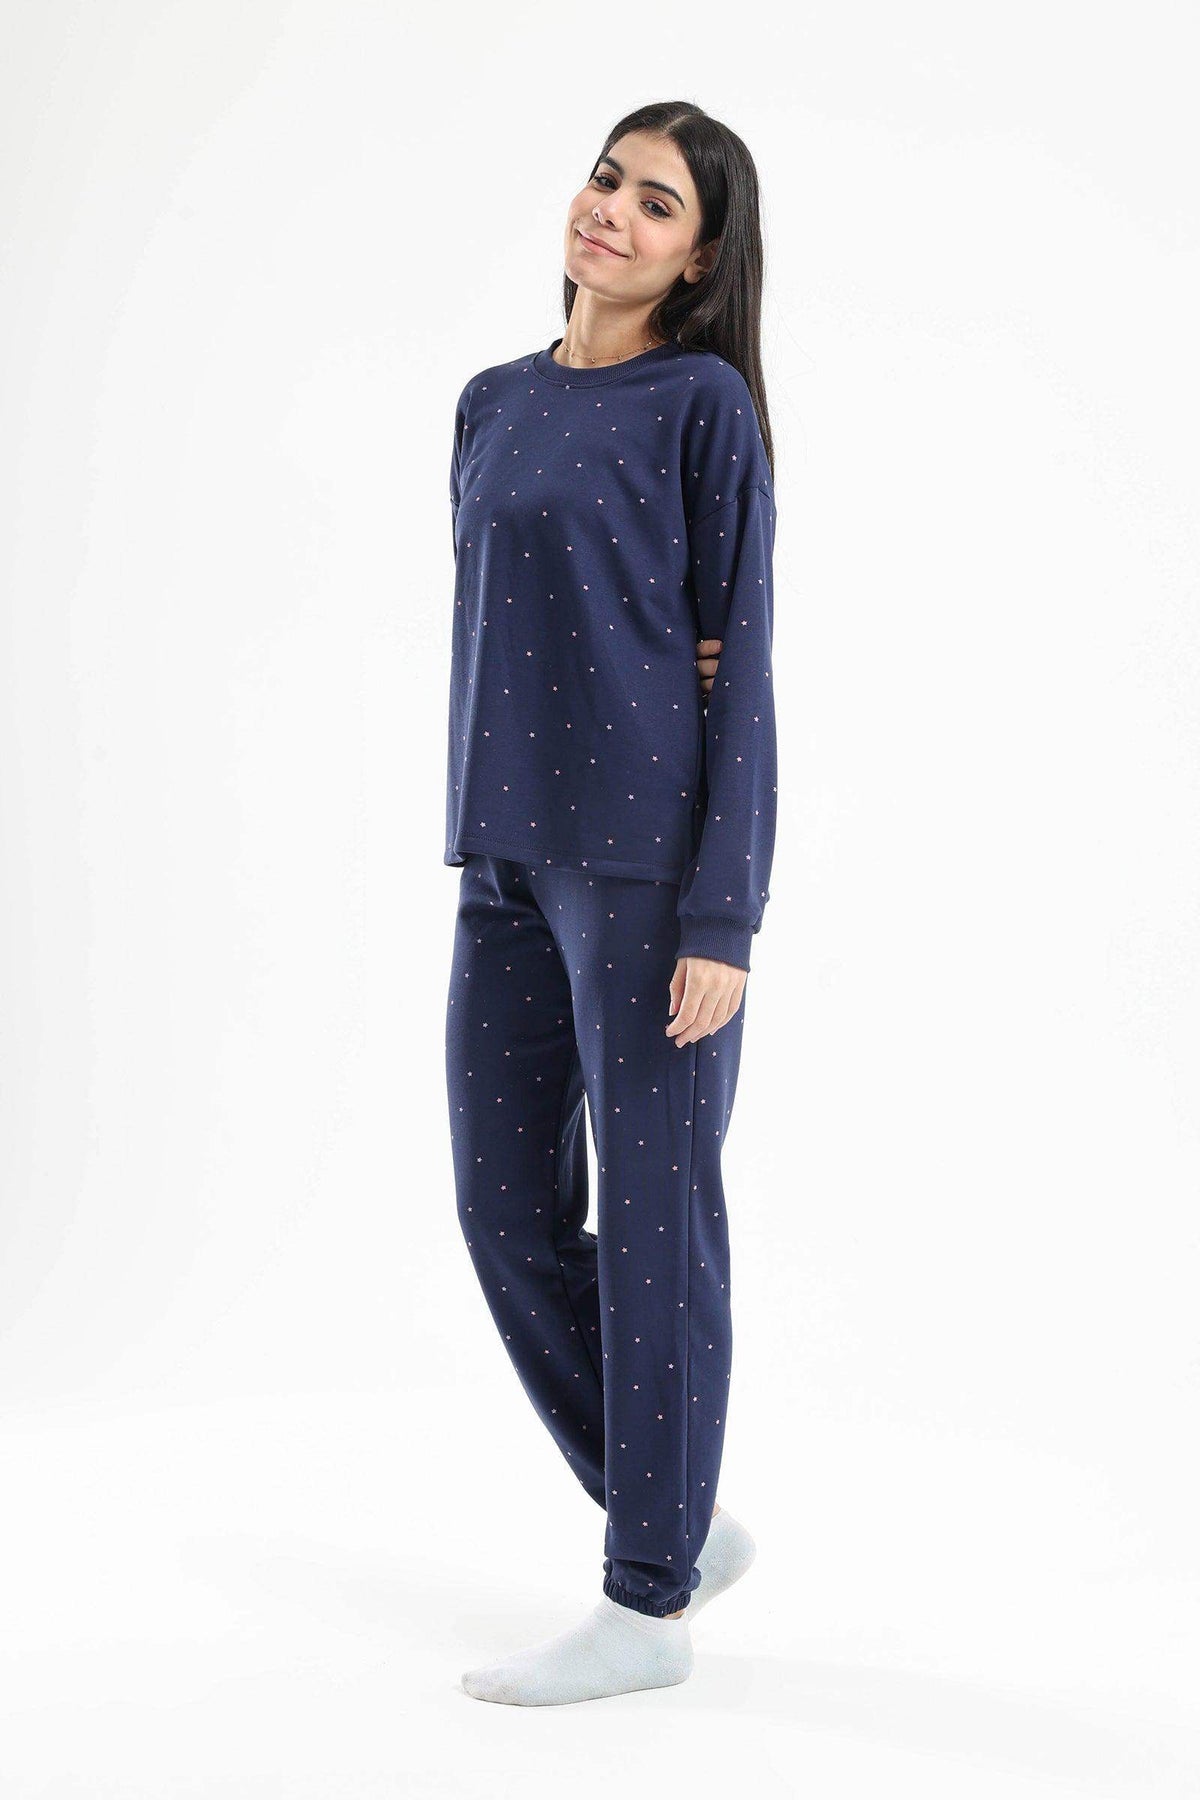 All Over Printed Stars Pyjama Set - Carina - كارينا